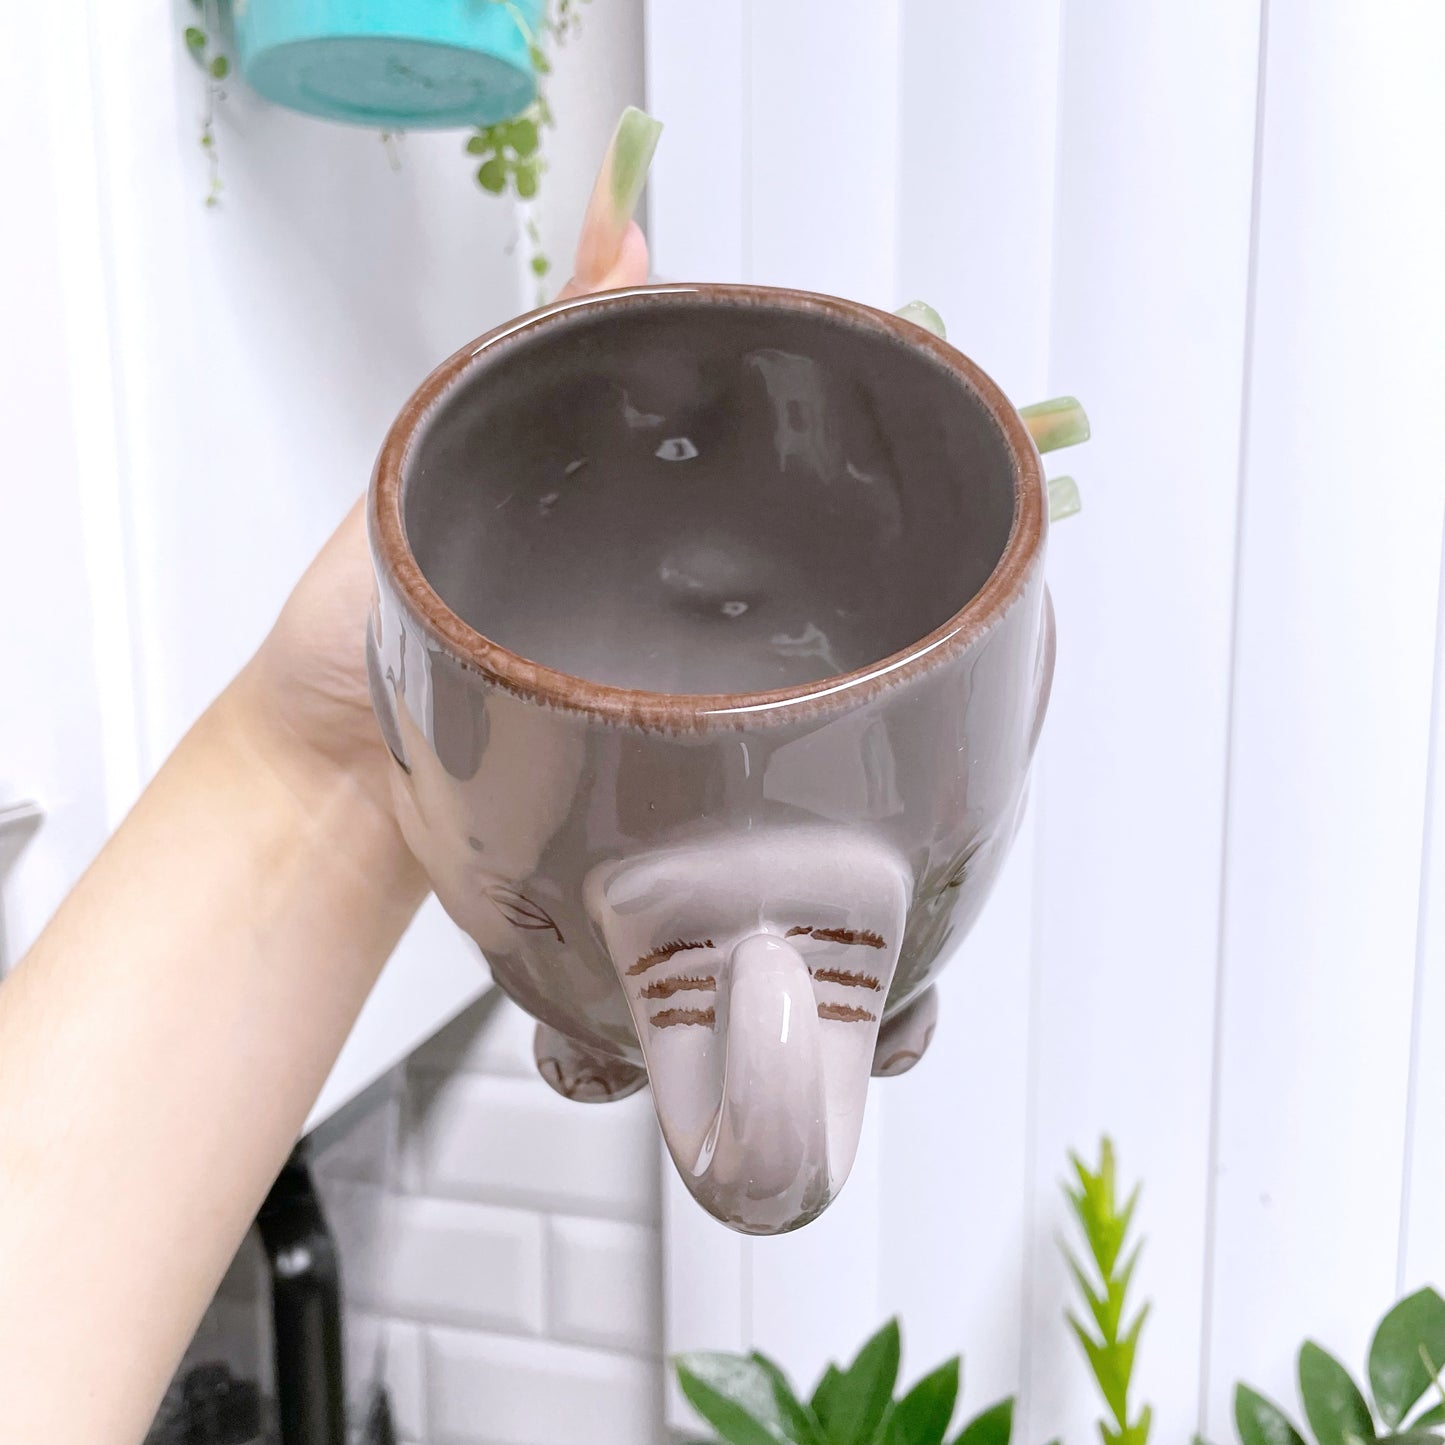 Elephant 3D Ceramic Mug